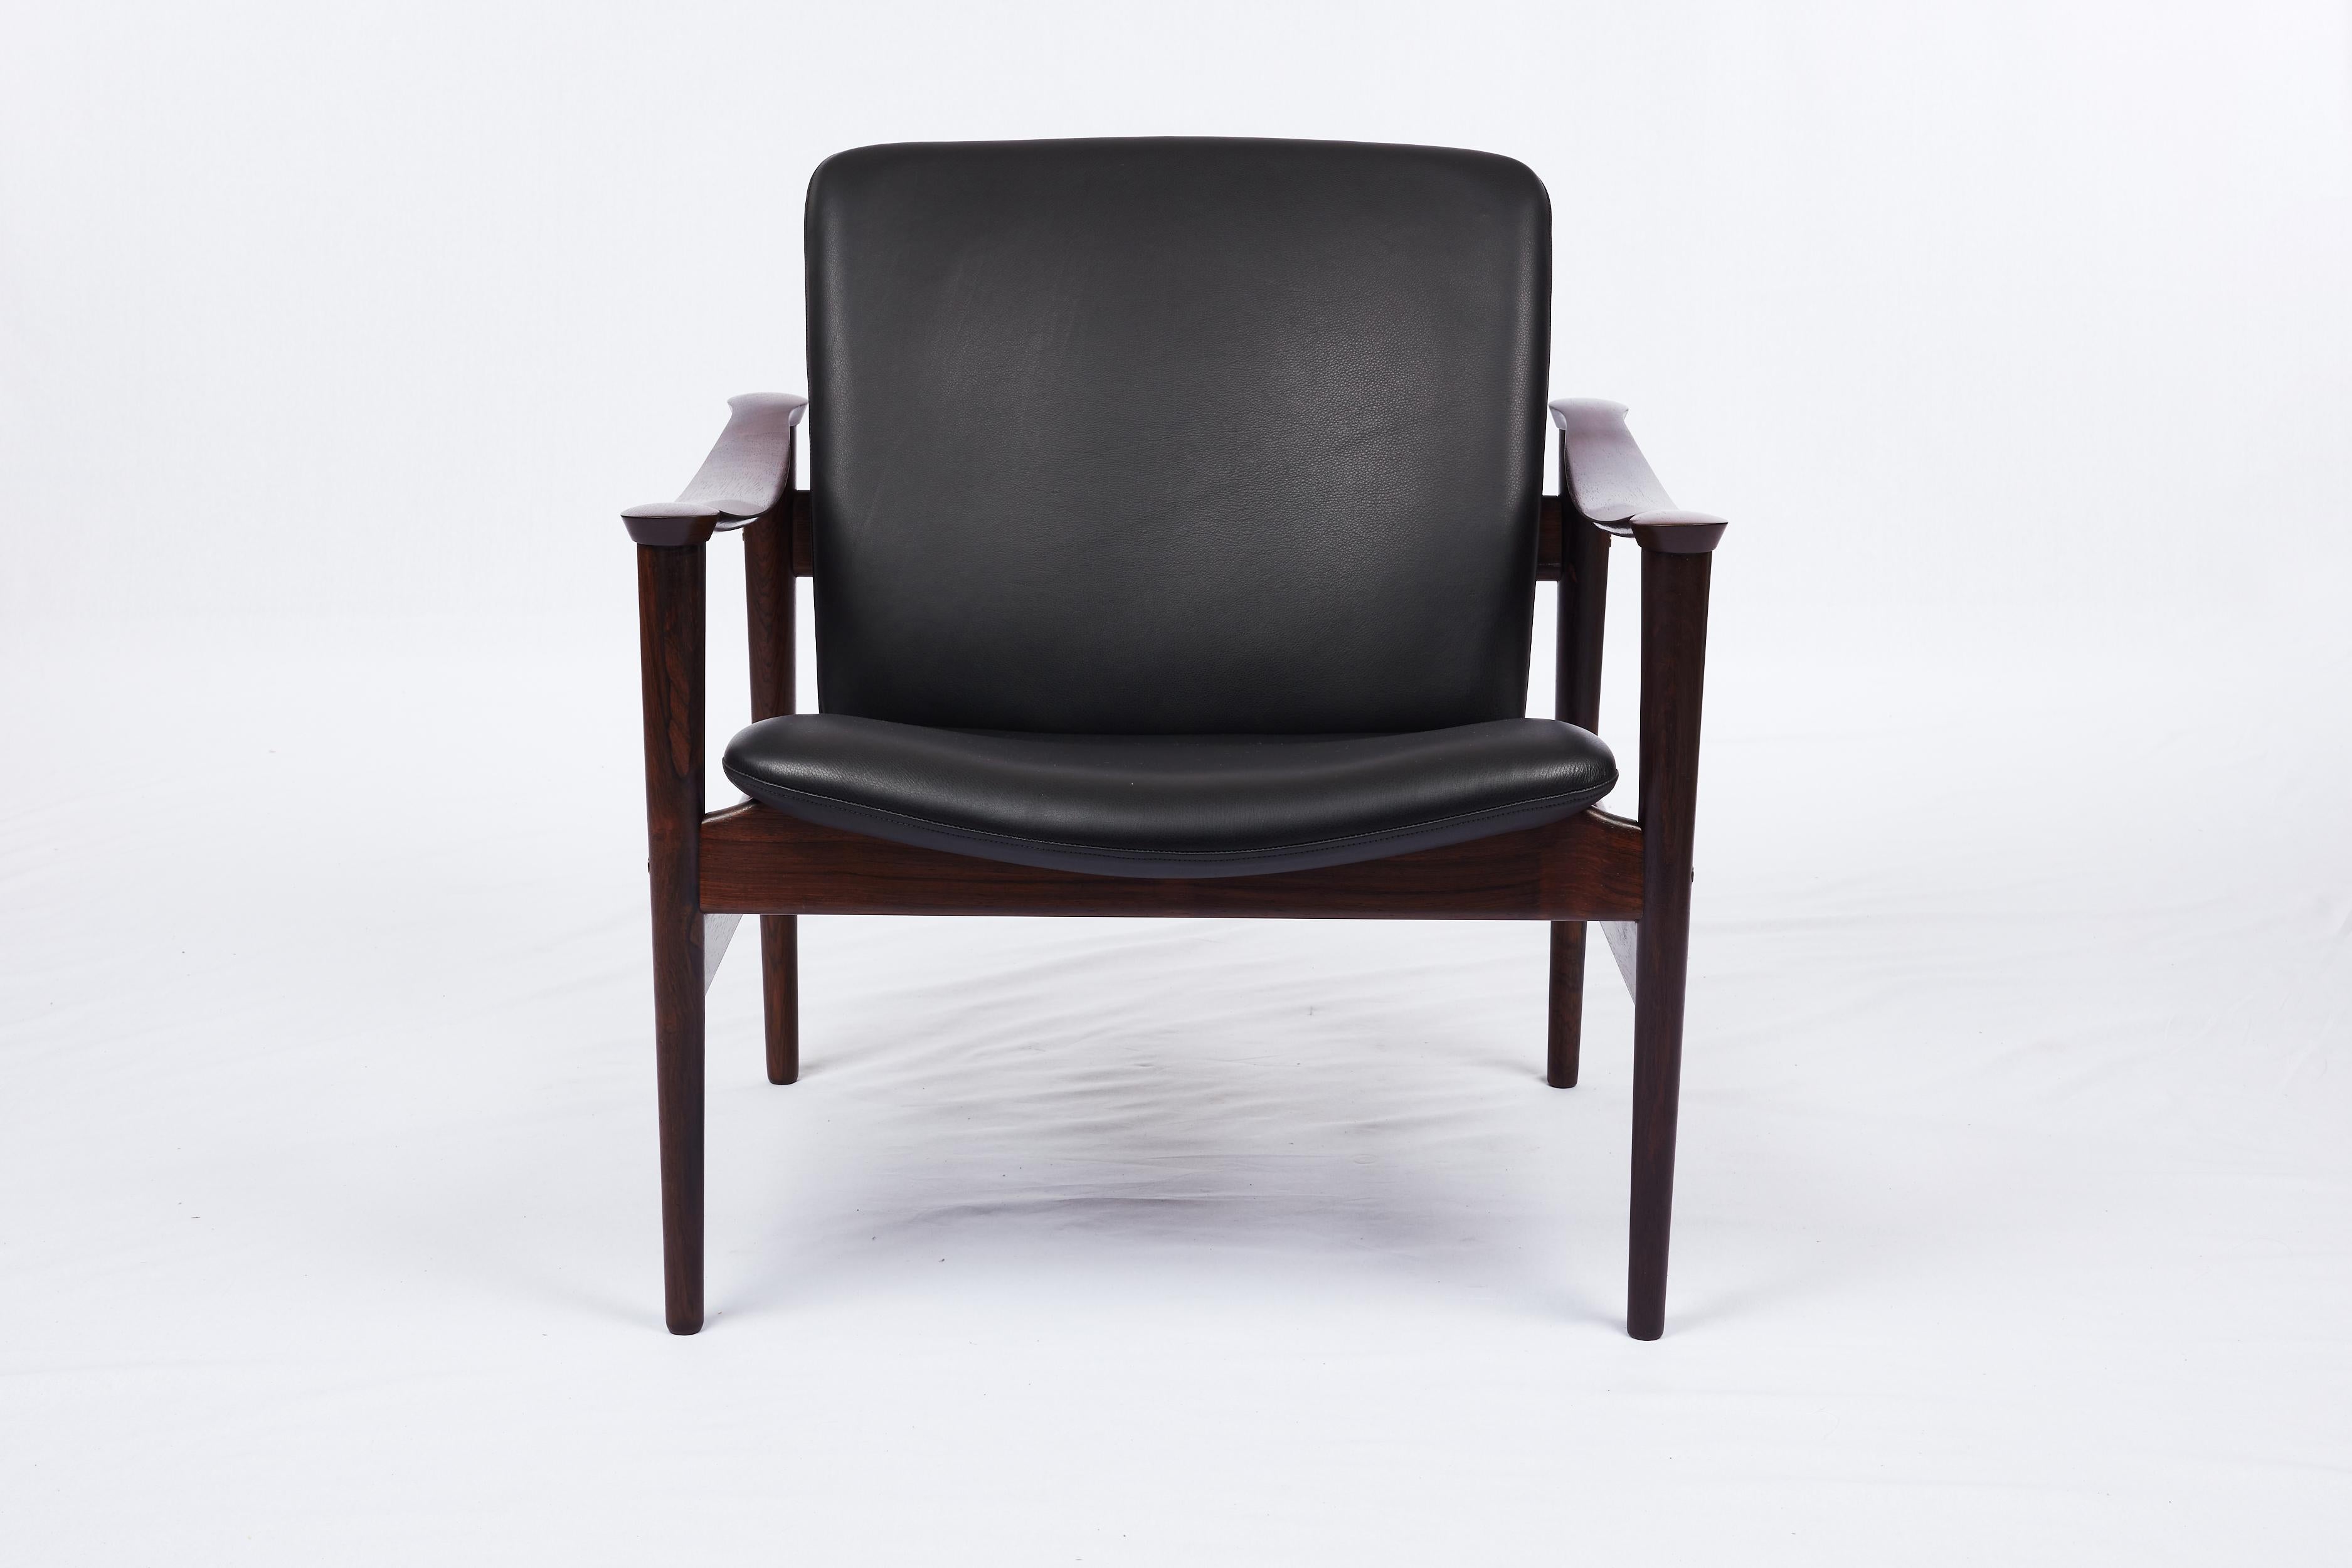 Sessel aus Palisanderholz von Fredrik Kayser, entworfen 1961 und hergestellt von Vatne.